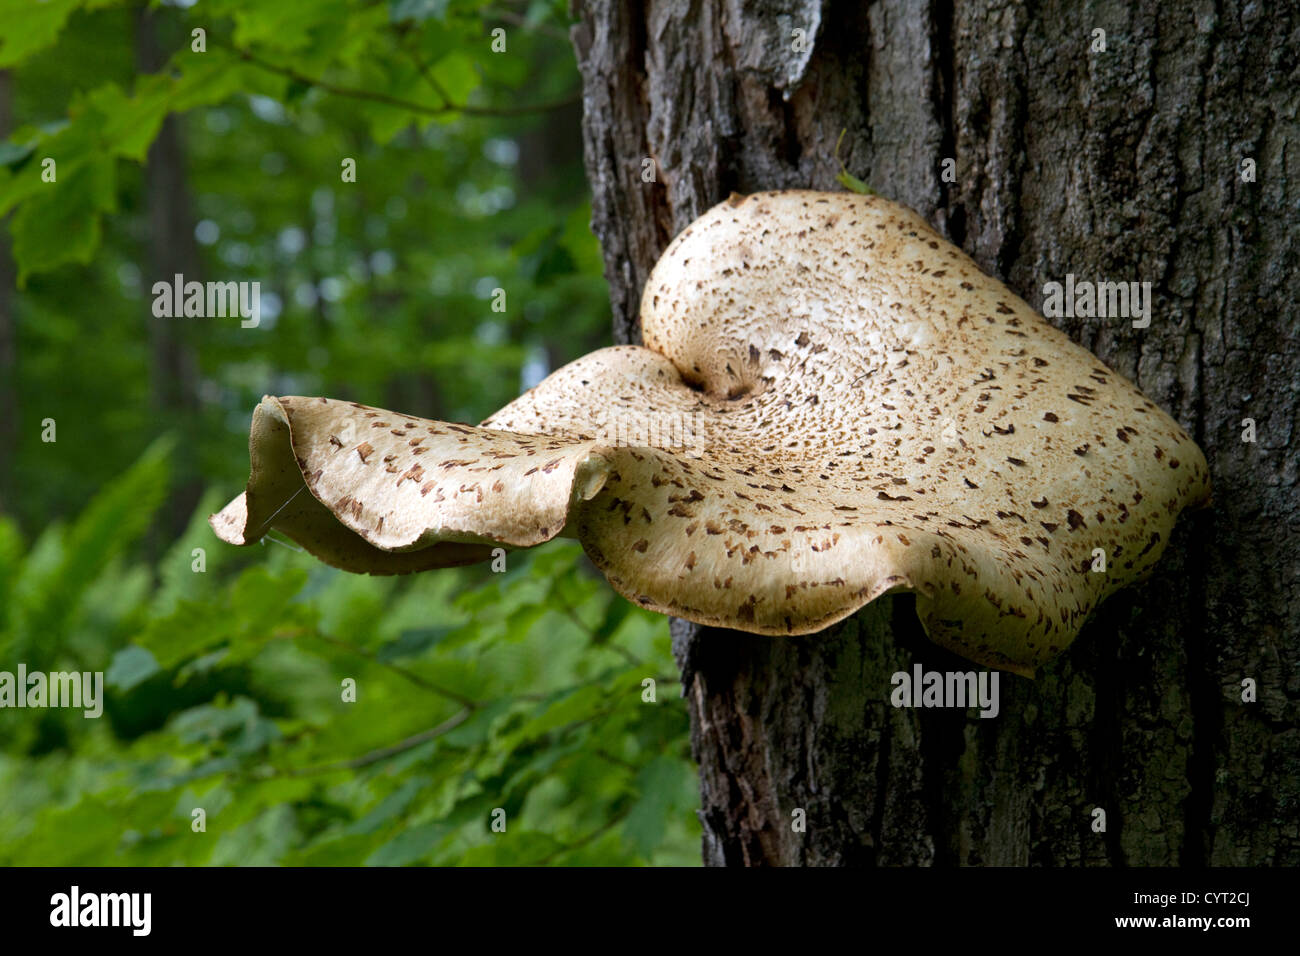 La staffa o mensola funghi a Pictured Rocks National Lakeshore a Lago Superior nella Penisola Superiore del Michigan, Stati Uniti d'America. Foto Stock